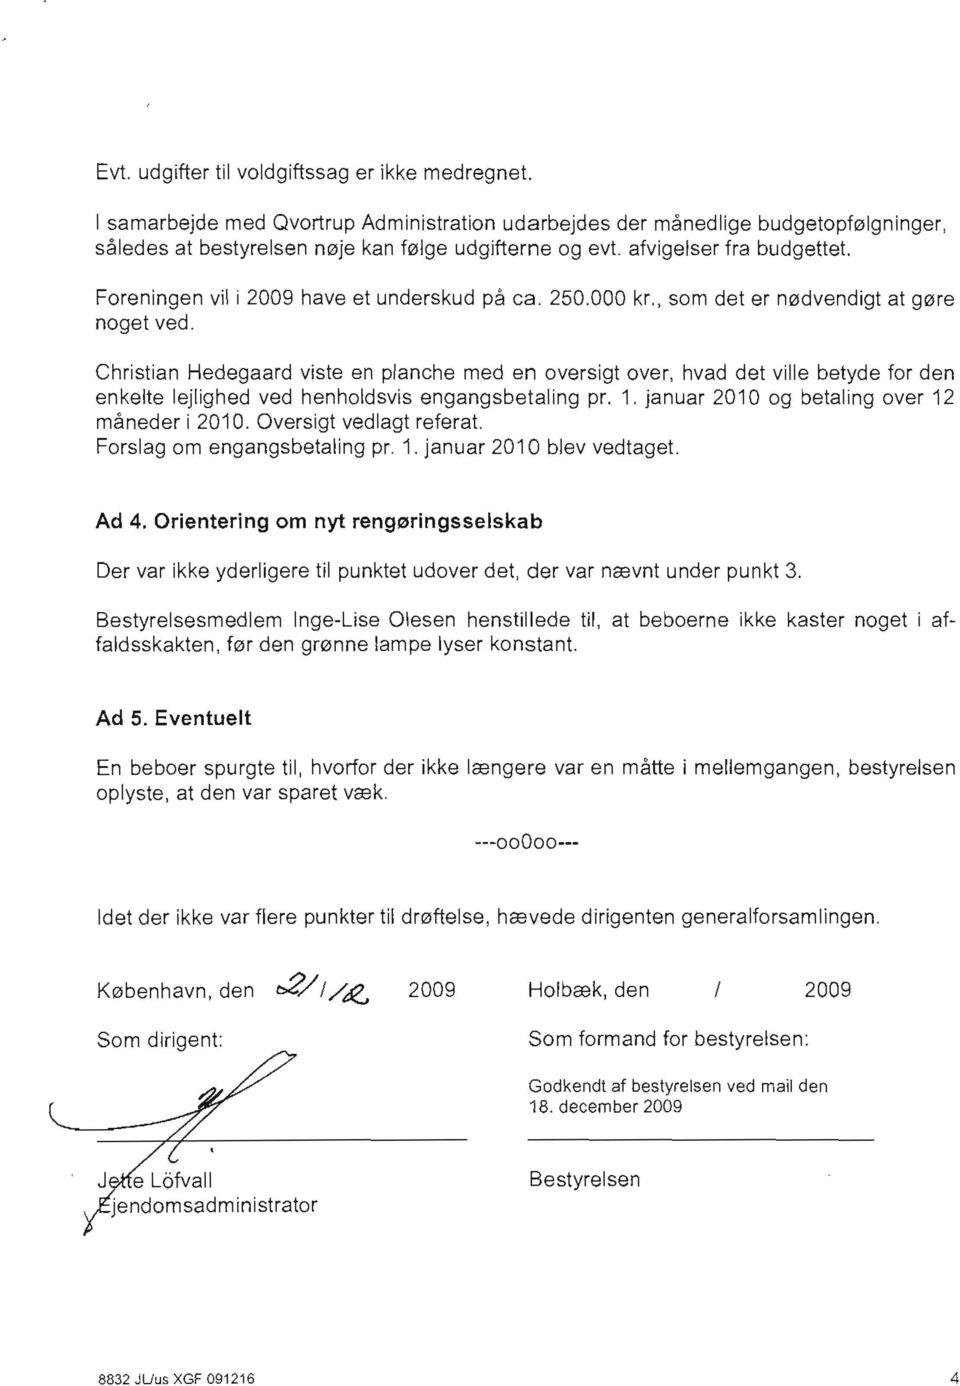 Christian Hedegaard viste en planche med en oversigt over, hvad det ville betyde for den enkelte lejlighed ved henholdsvis engangsbetaling pr. 1. januar 2010 og betaling over 12 måneder i 2010.